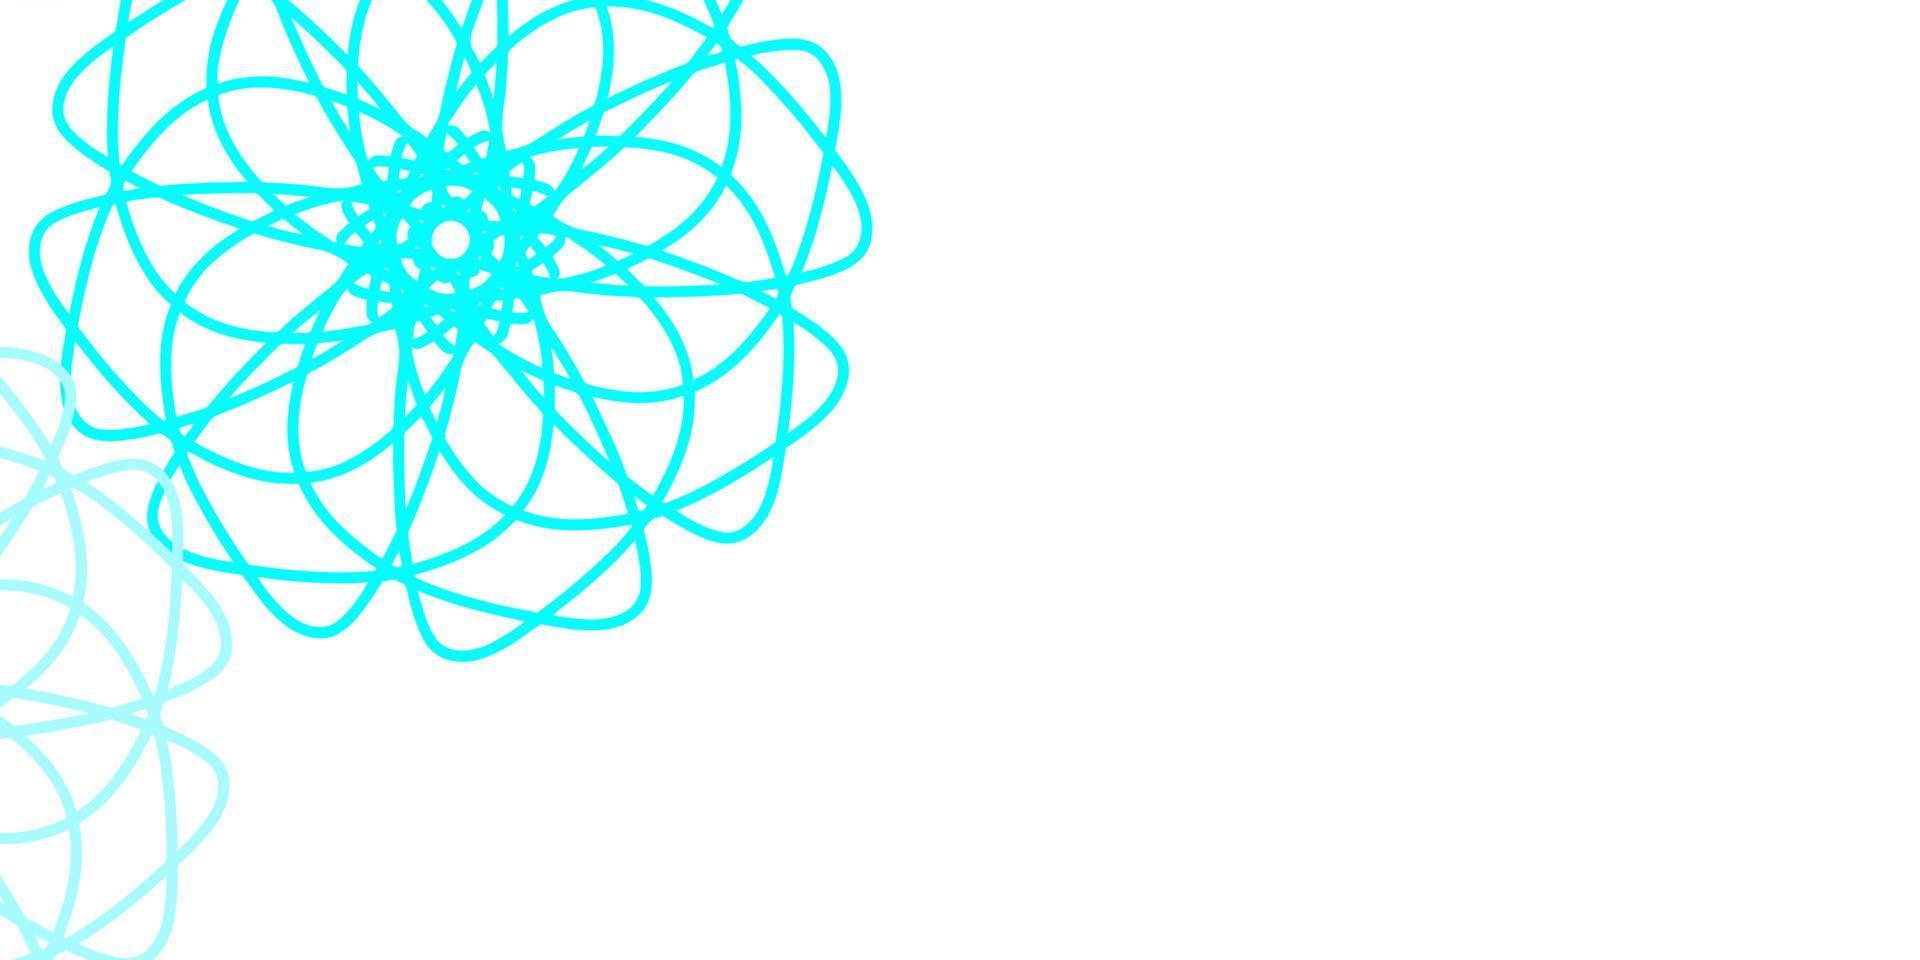 textura de doodle de vetor azul e amarelo claro com flores.